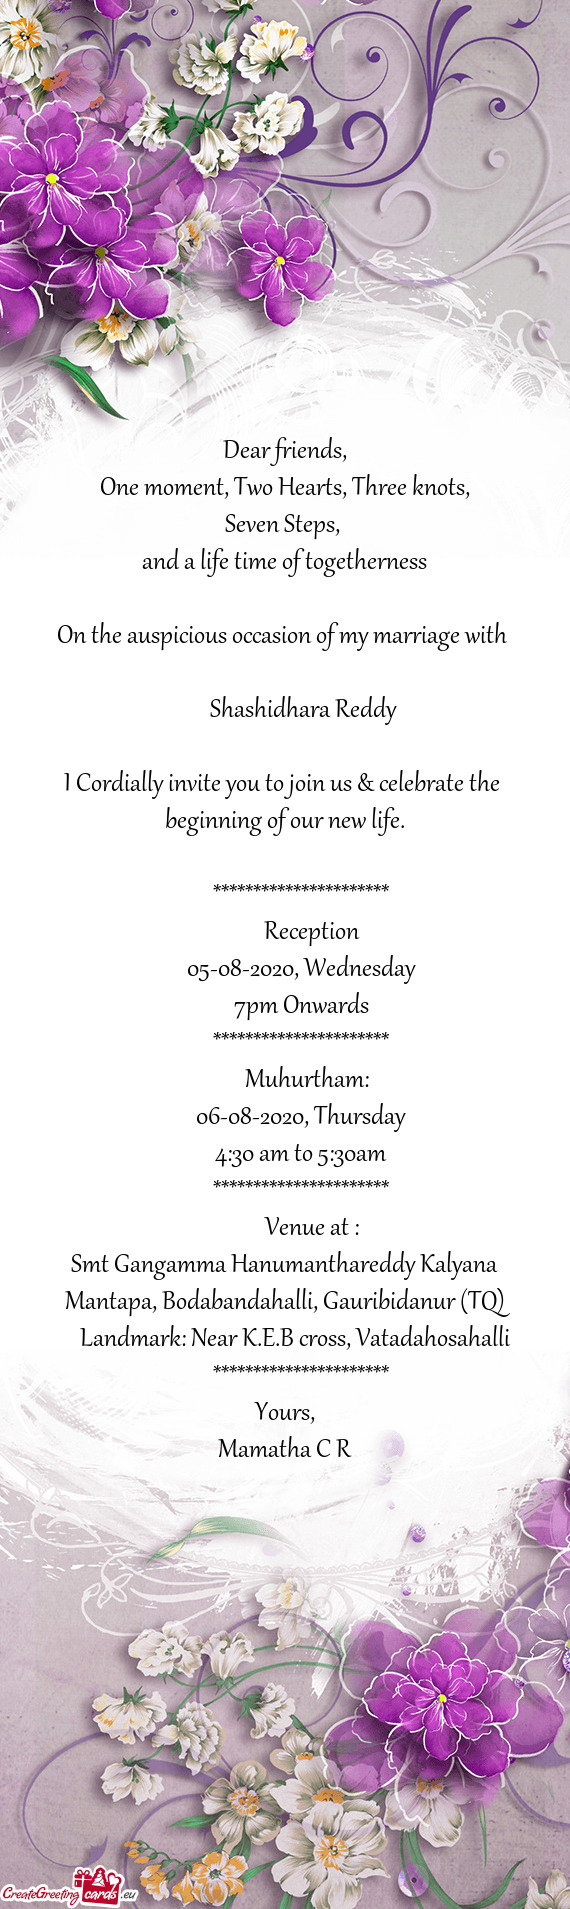 Shashidhara Reddy